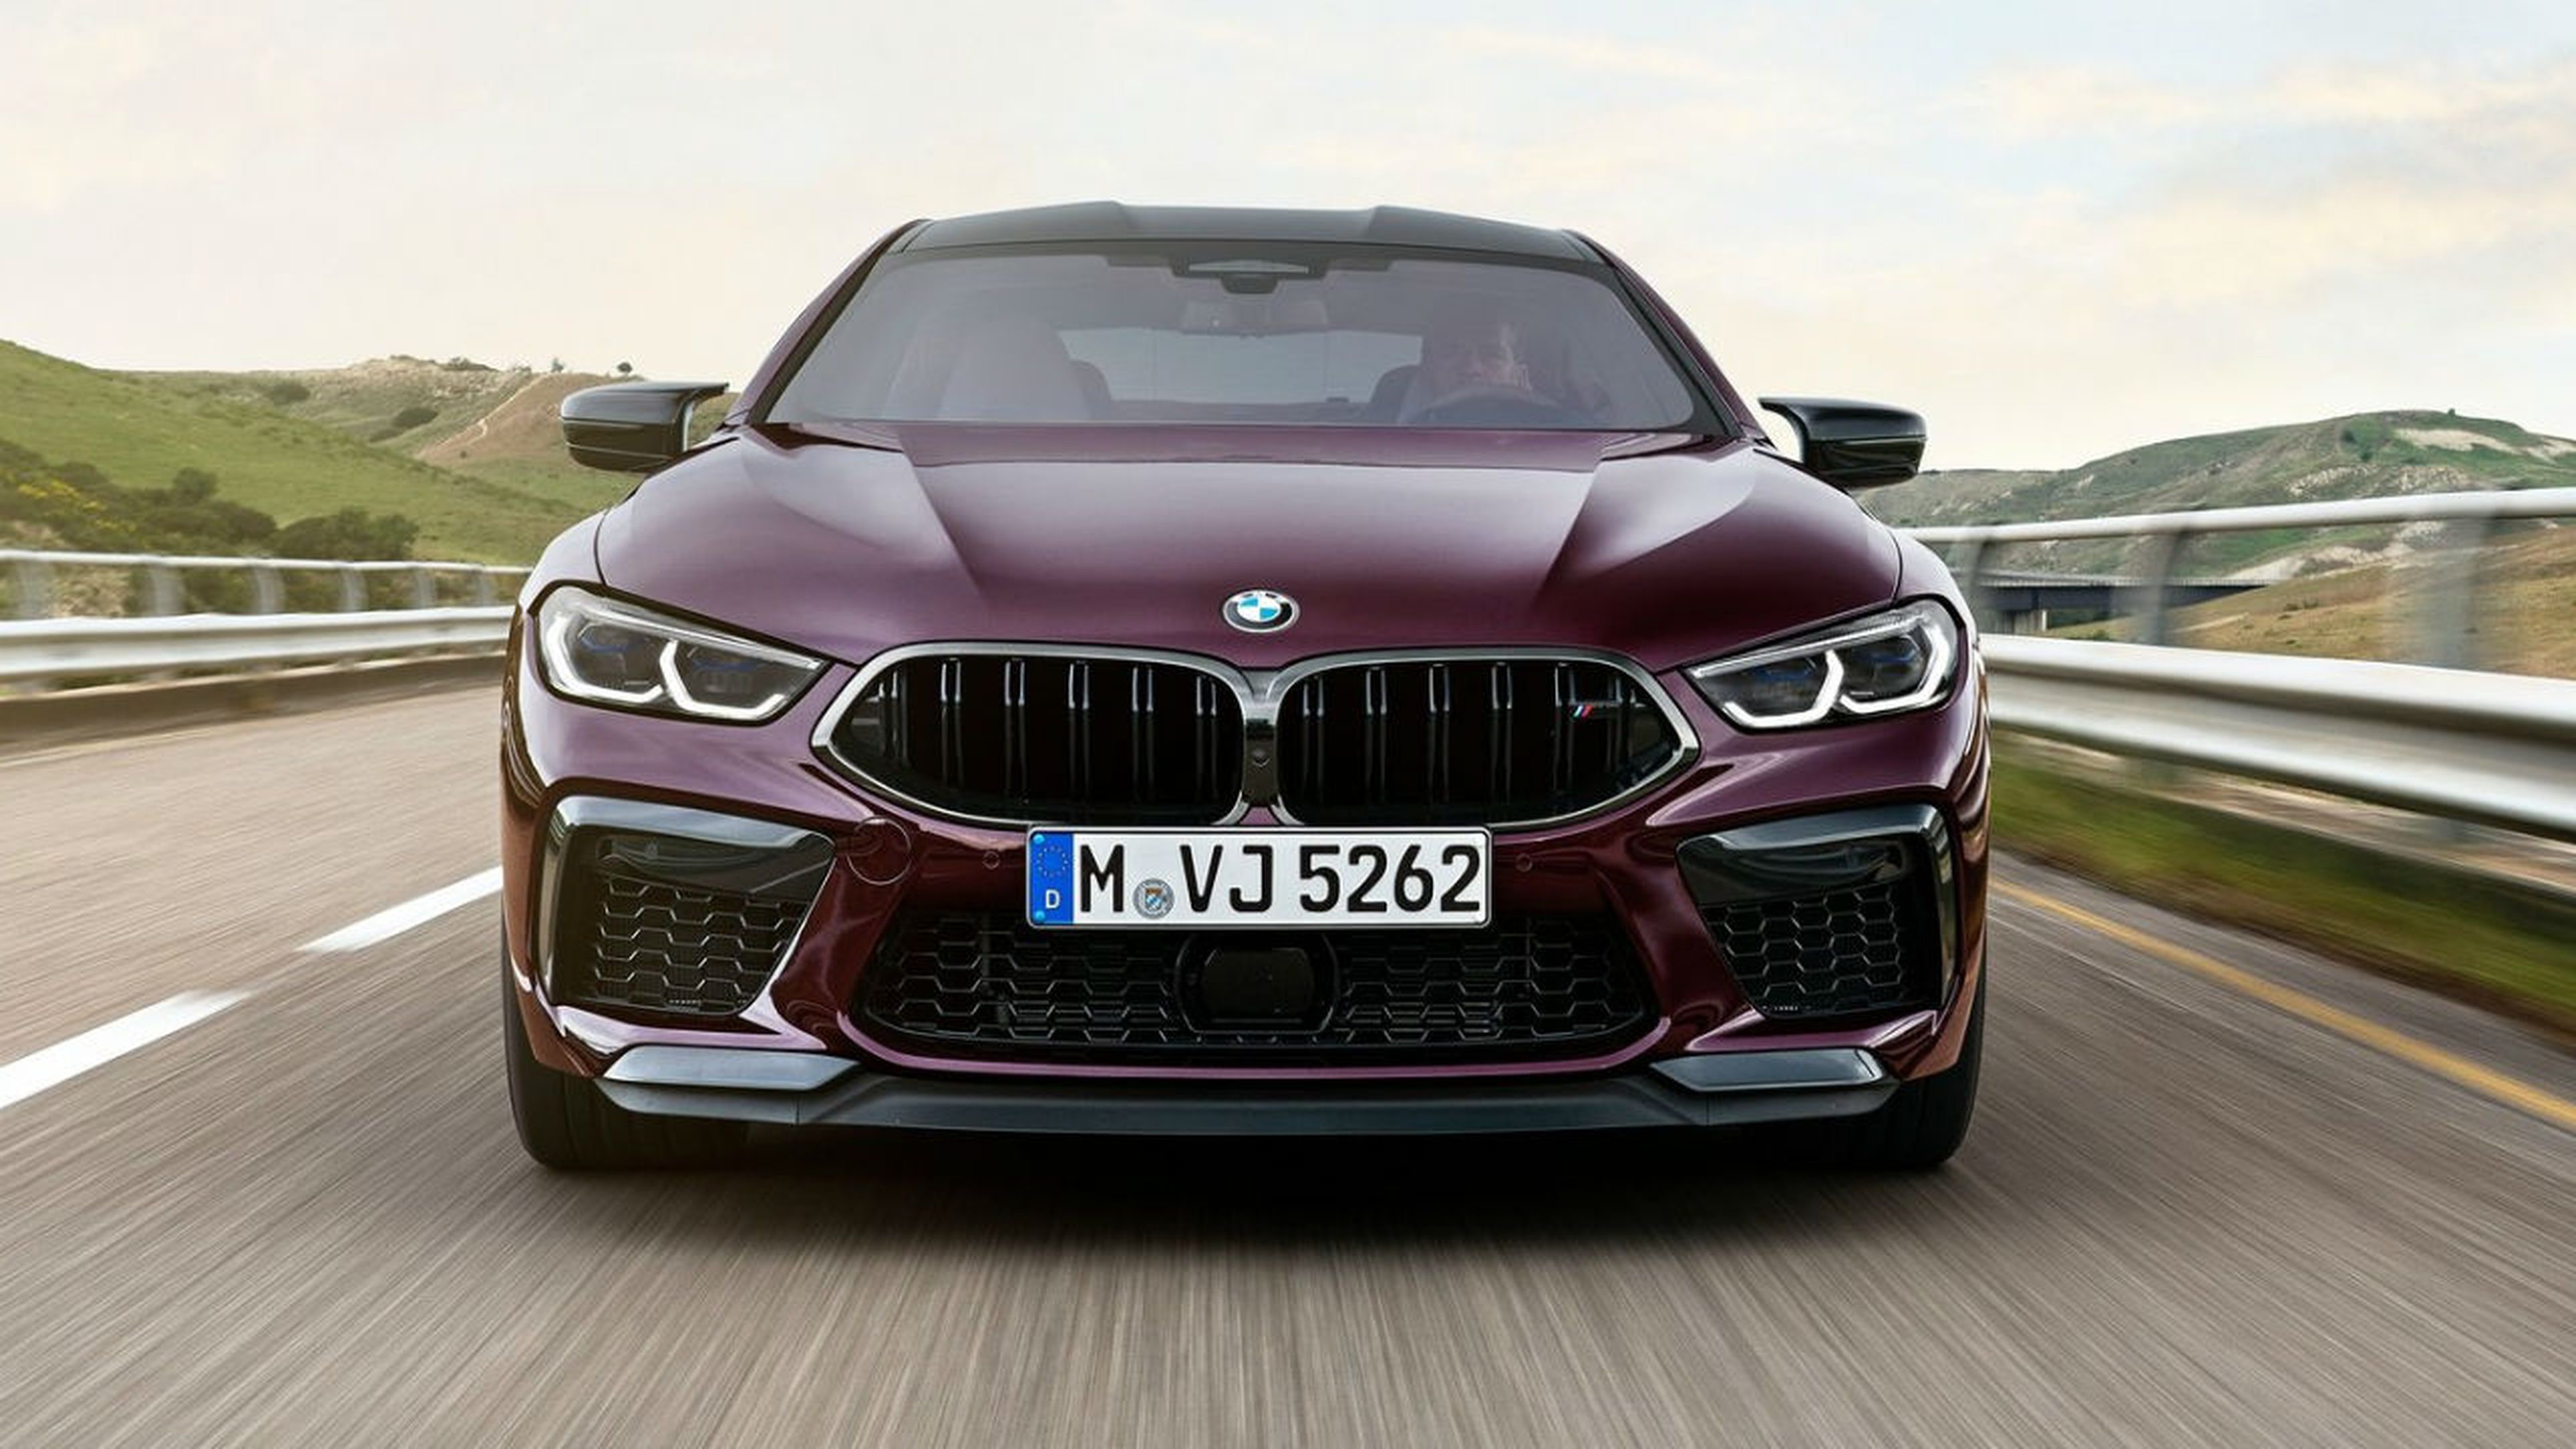 La versión Competition del BMW M8 Gran Coupé 2020 presenta algunos detalles estéticos de mayor agresividad.